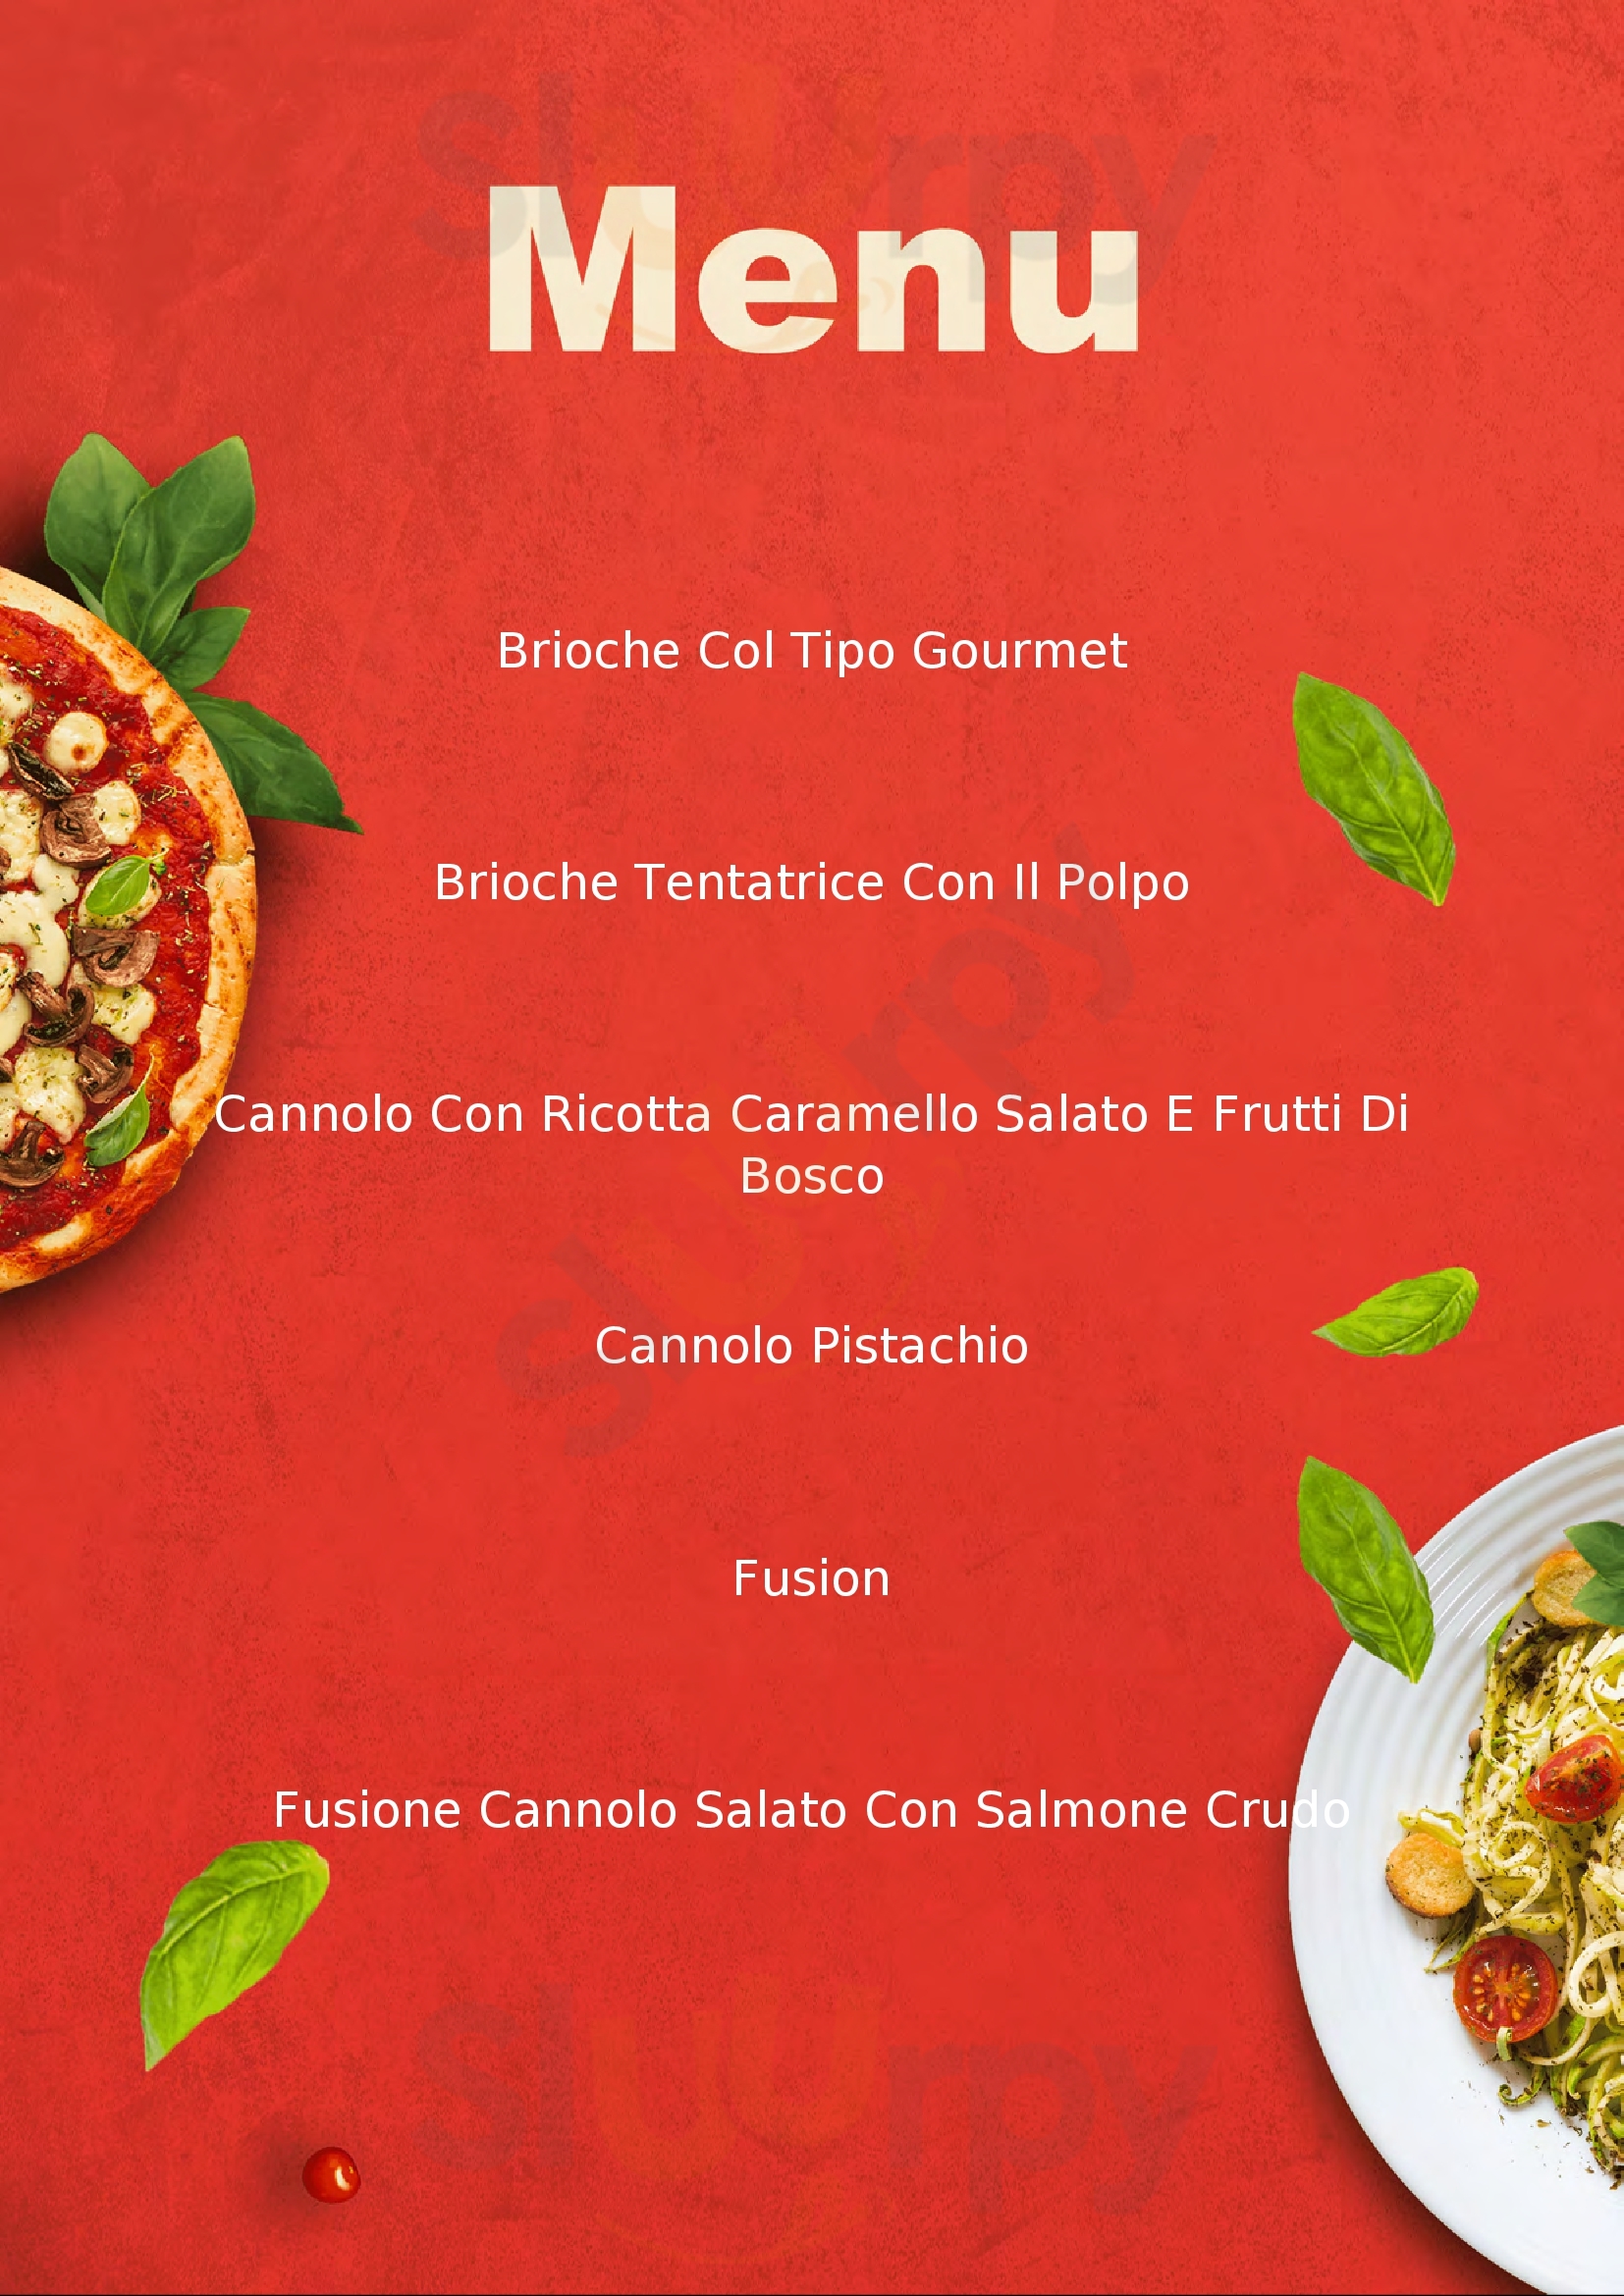 La Cannoleria Gourmet & Co Milano menù 1 pagina